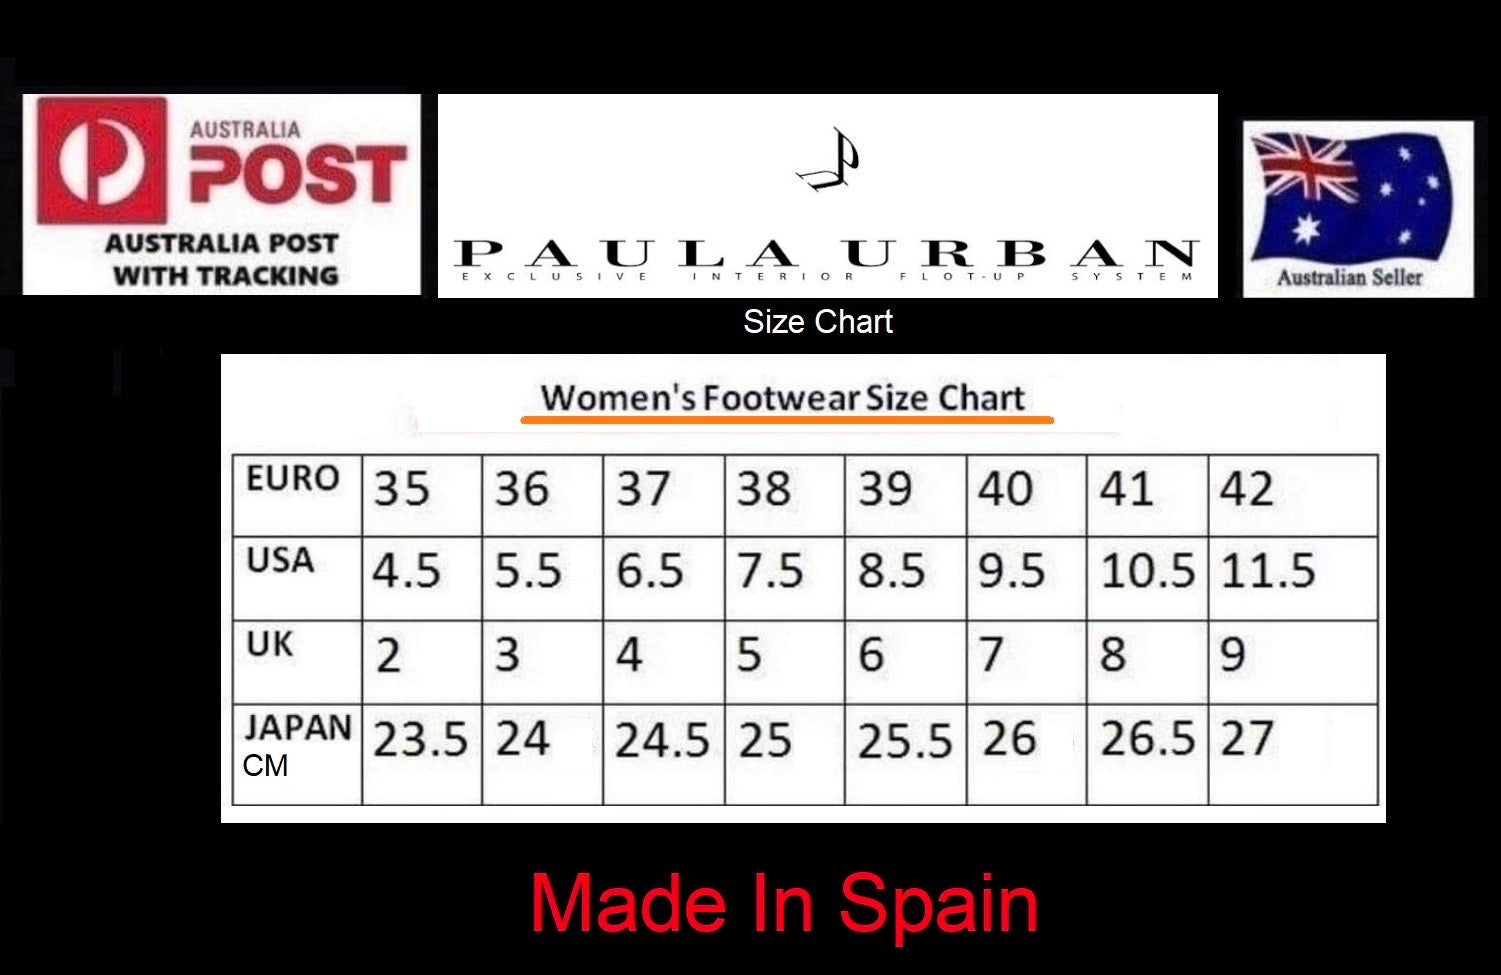 Paula Urban 23-514 Kaki Green Bangla Leather Wedge Made In Spain